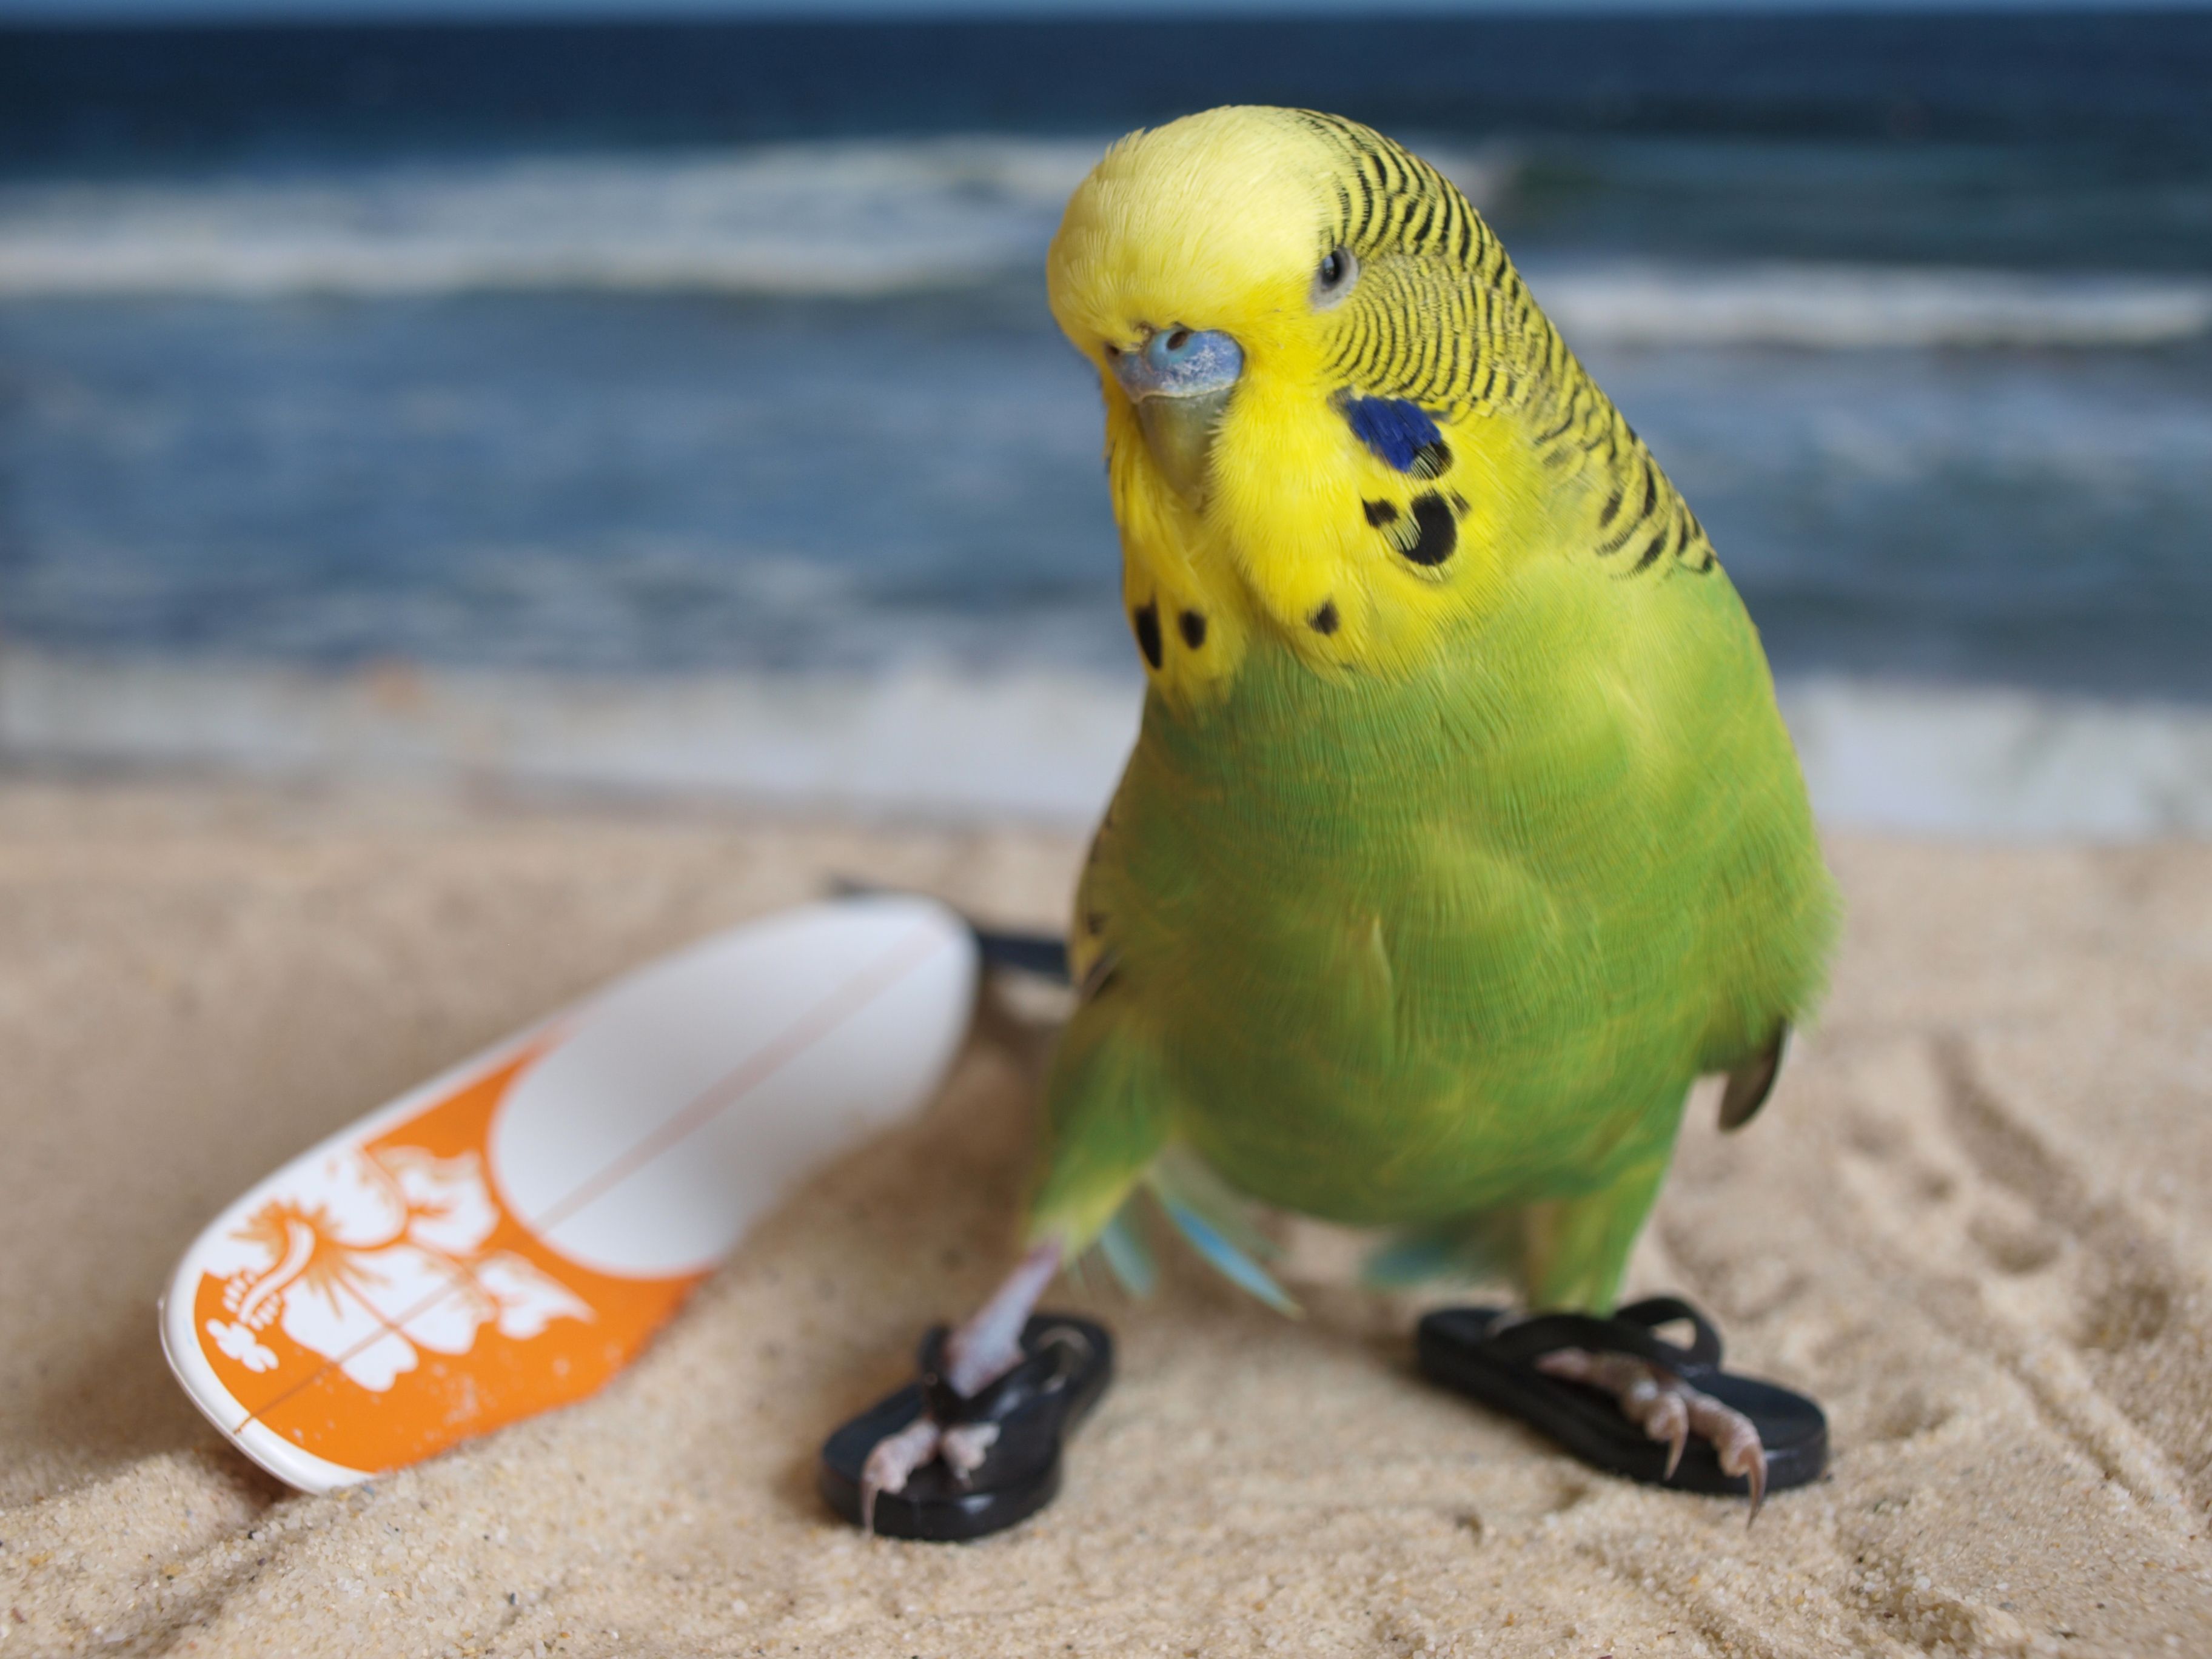 mini sörf tahtasının yanında dururken plaj terliği giyen muhabbet kuşu